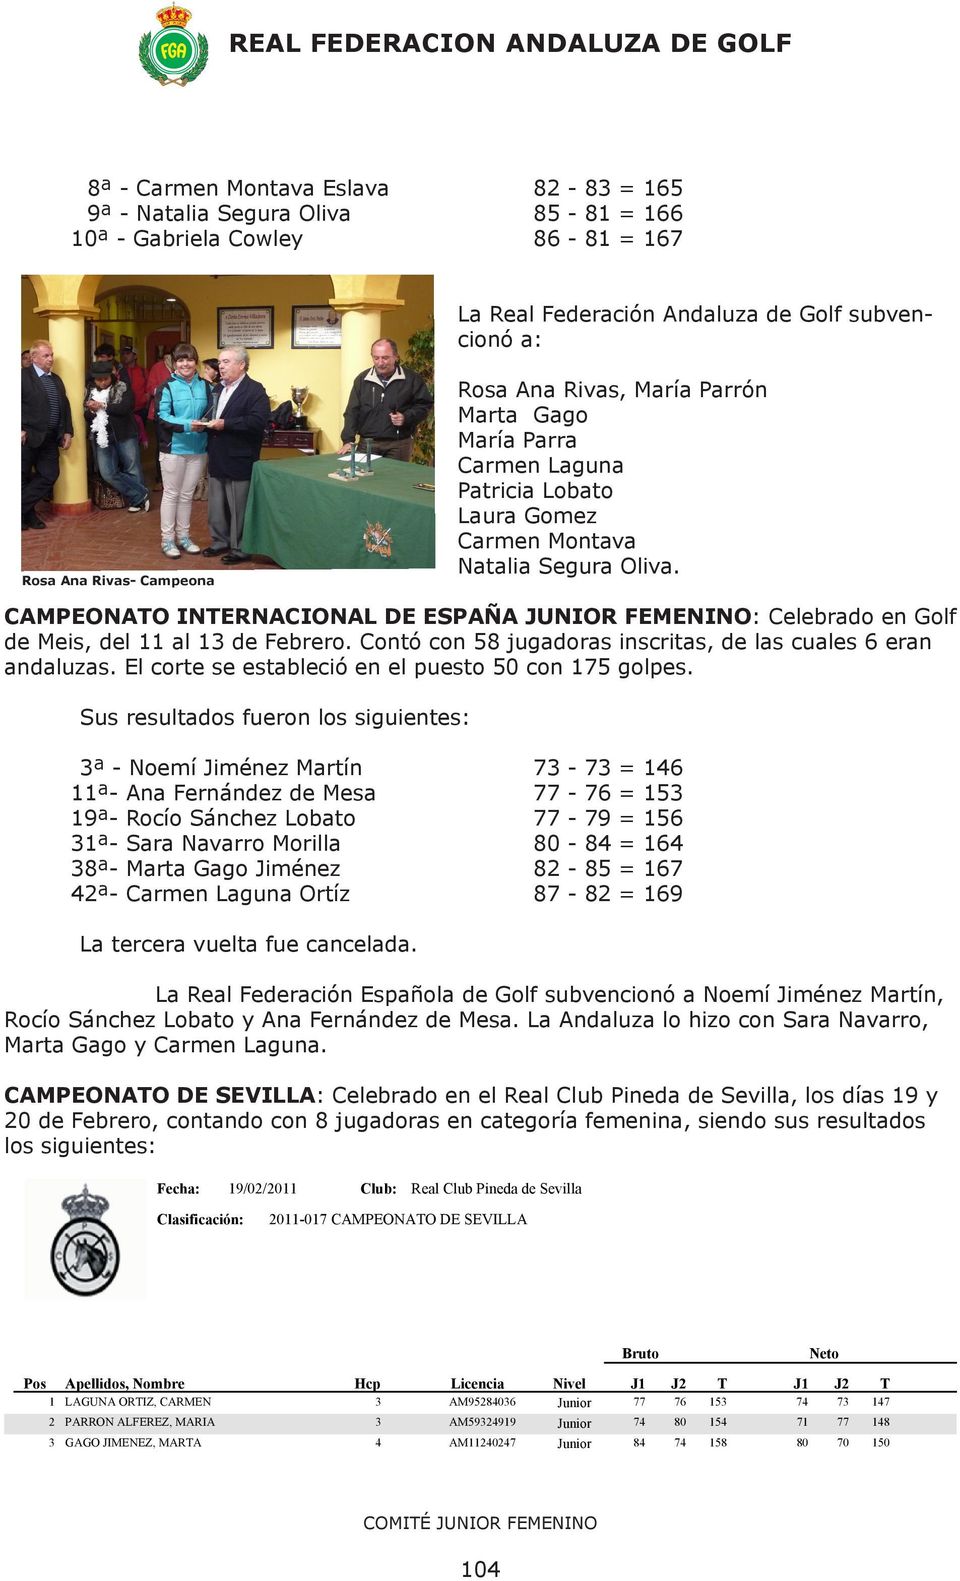 CAMPEONATO INTERNACIONAL DE ESPAÑA JUNIOR FEMENINO: Celebrado en Golf de Meis, del 11 al 13 de Febrero. Contó con 58 jugadoras inscritas, de las cuales 6 eran andaluzas.